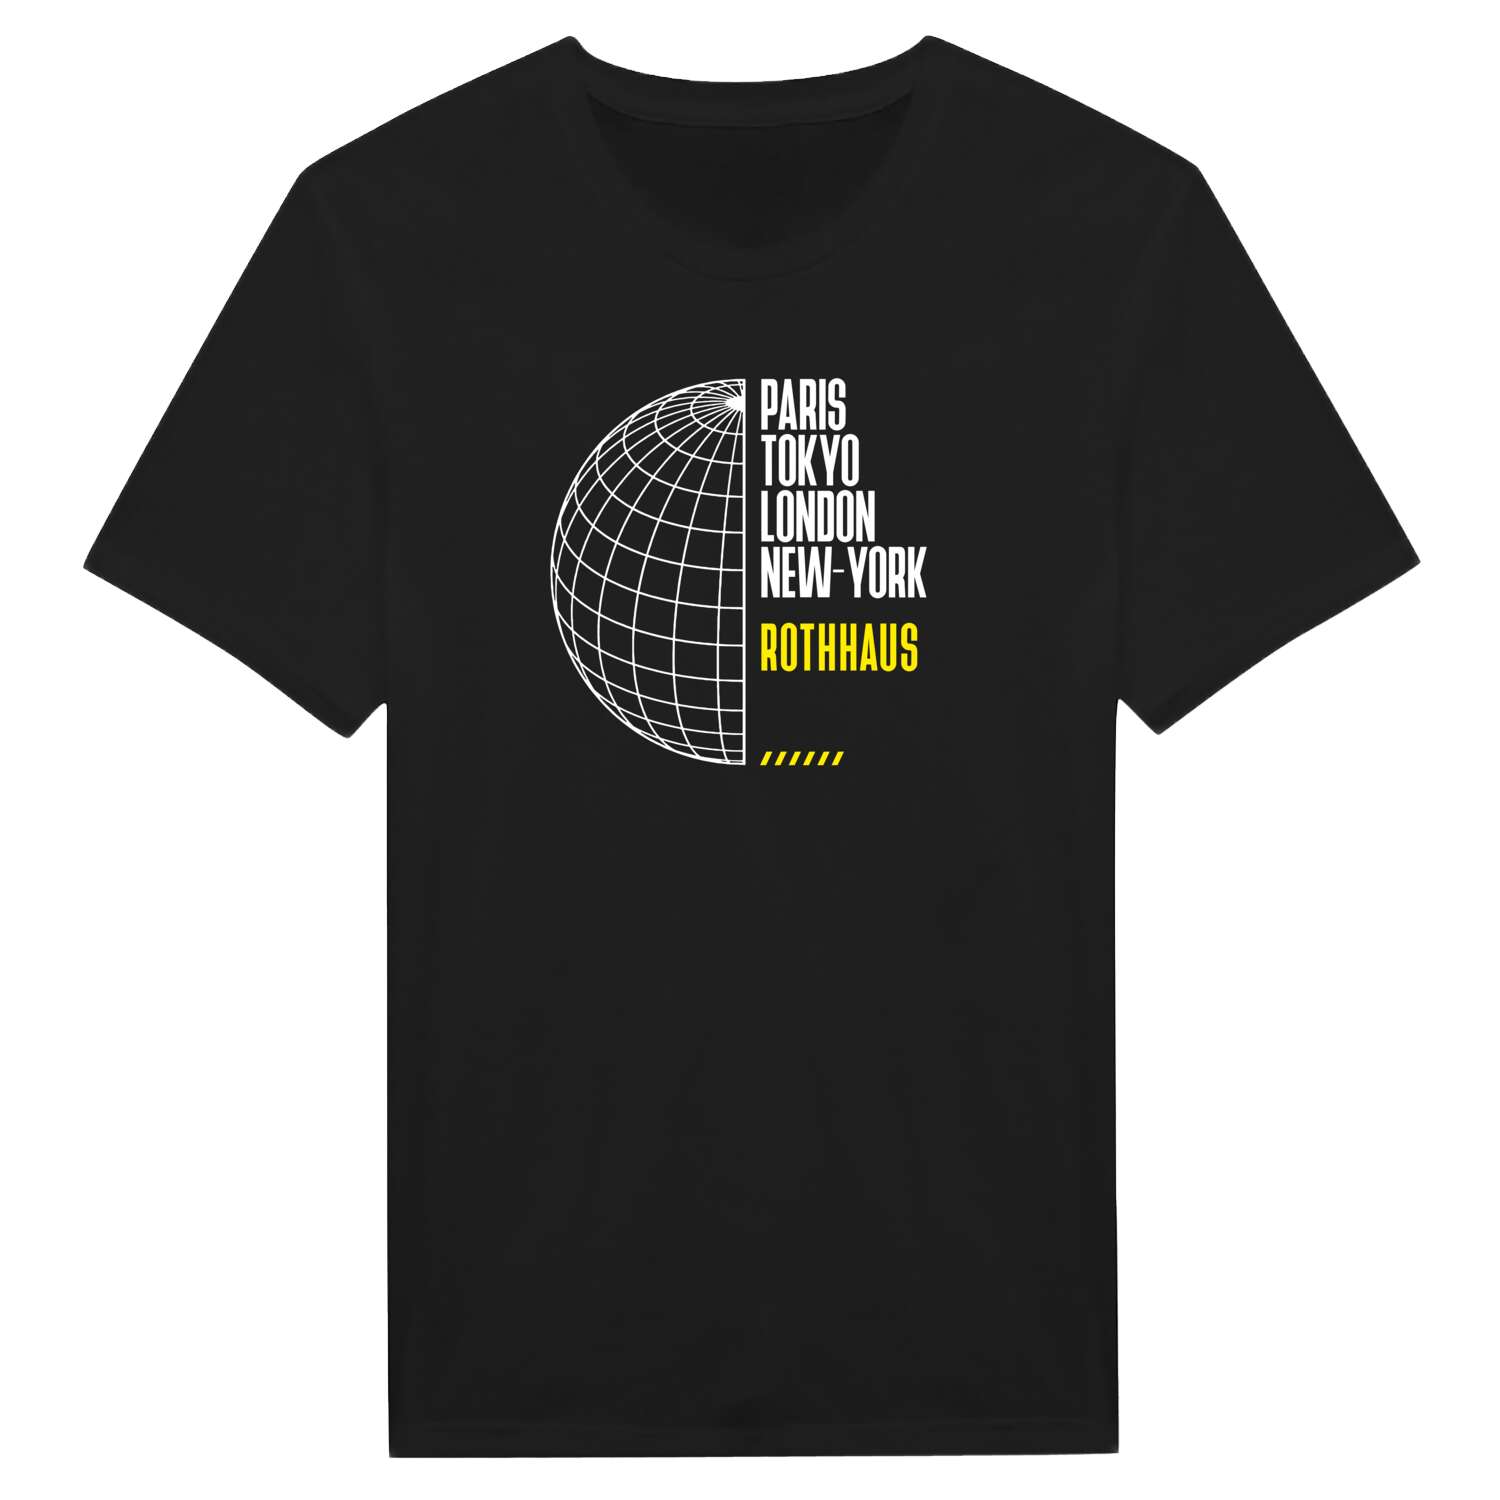 Rothhaus T-Shirt »Paris Tokyo London«